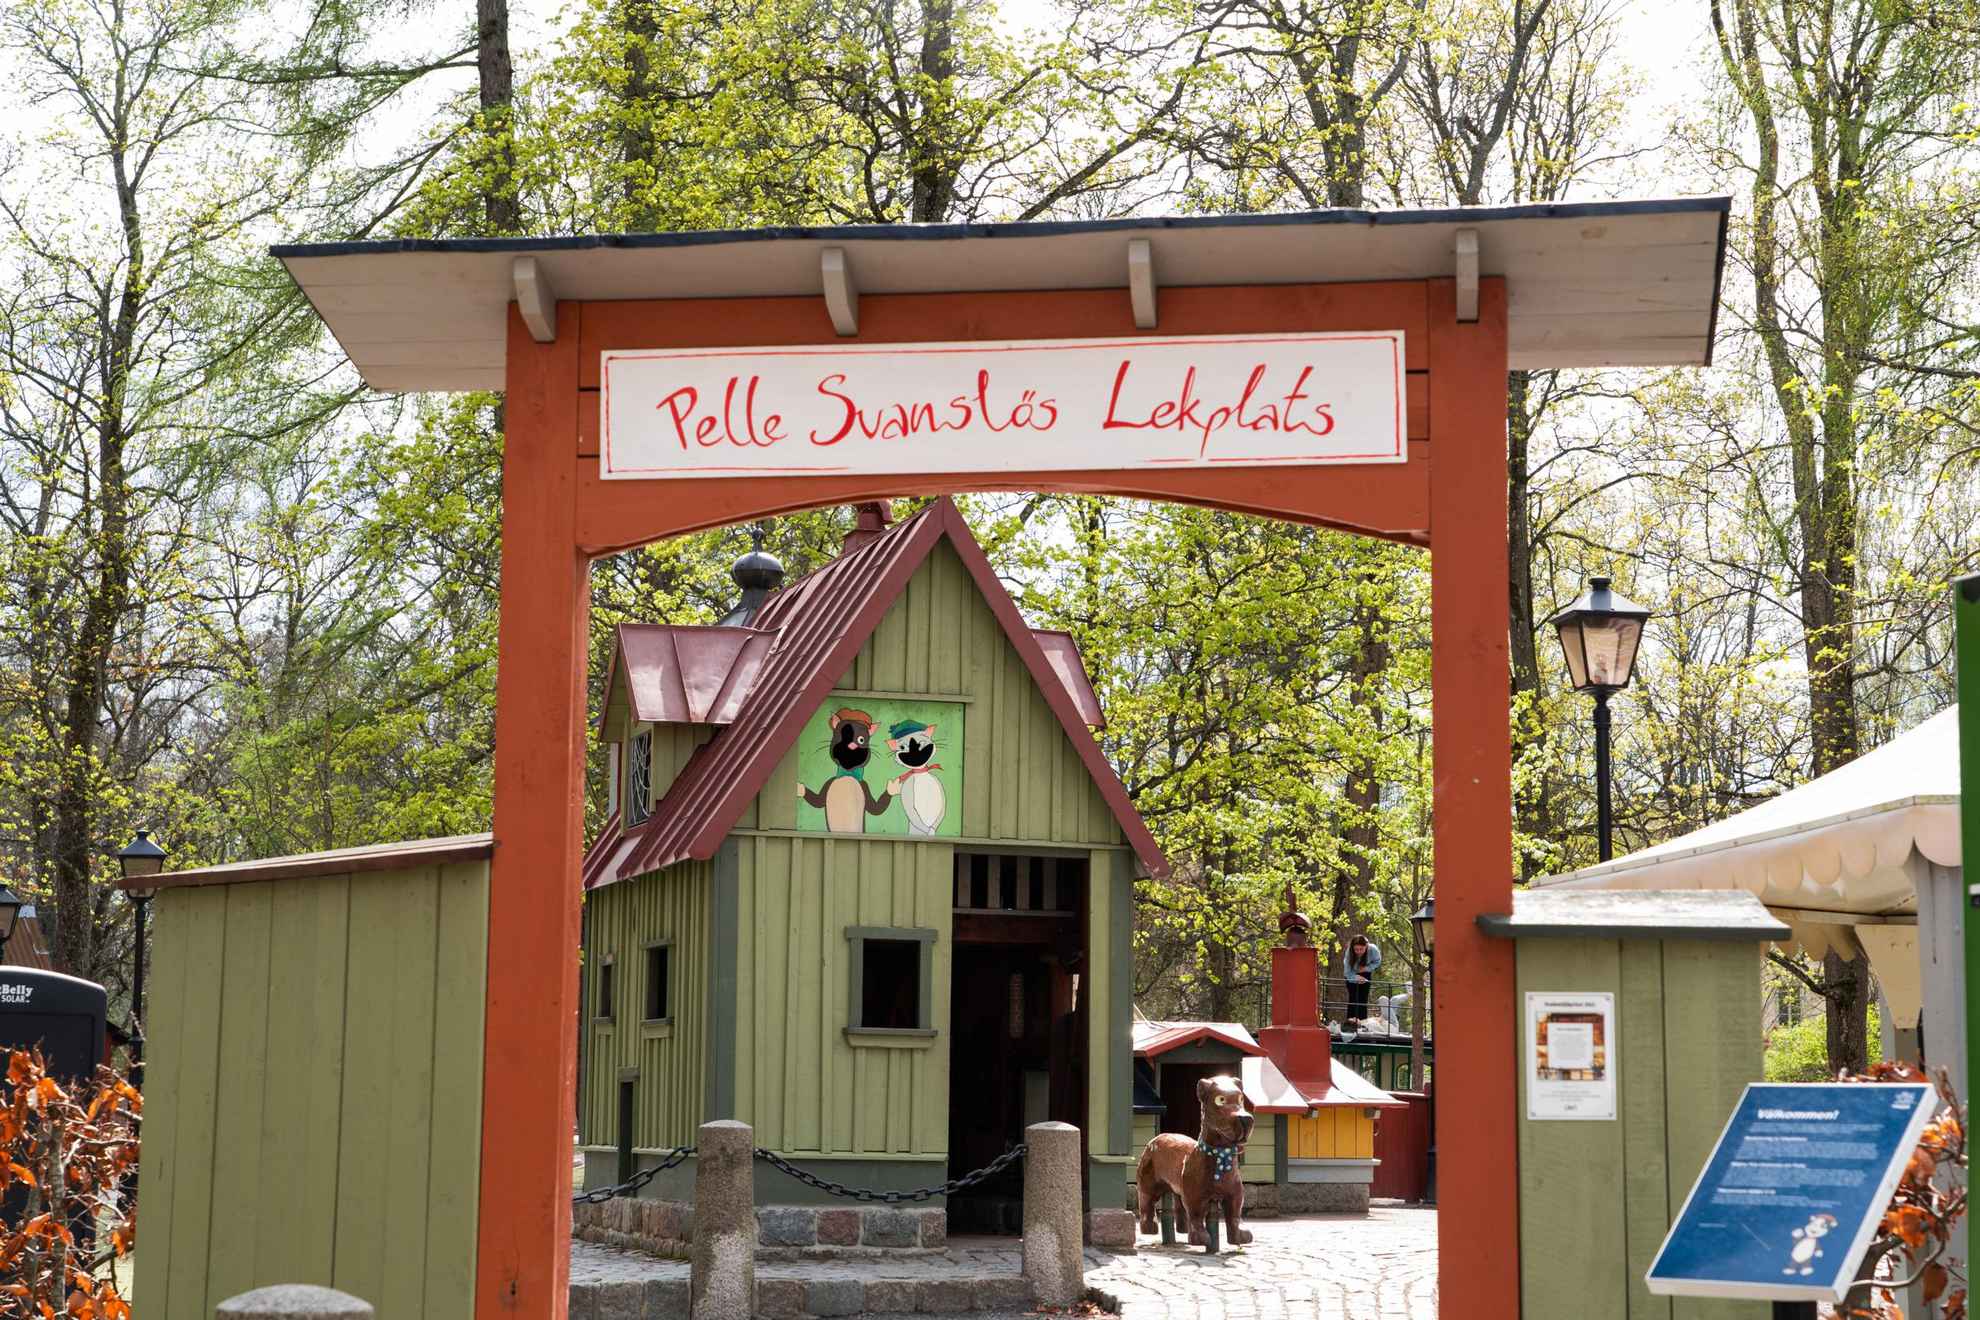 De ingang van de speeltuin Pelle Svanslös (‘Peter-geen-staart’).